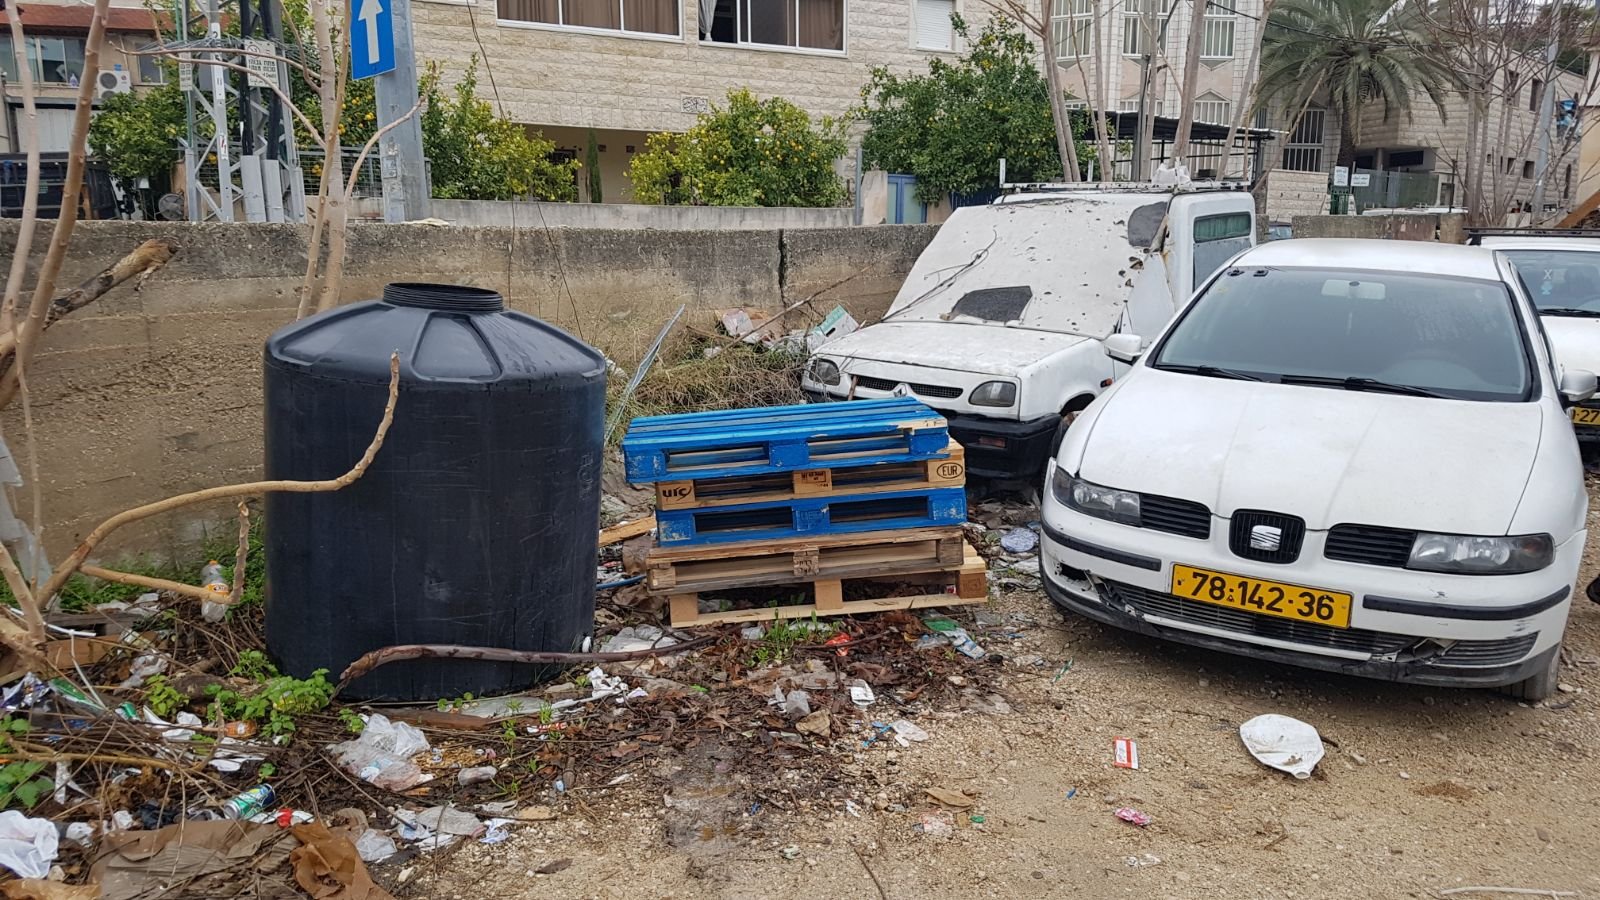 وحدة البيئة في بلدية الناصرة وحملة تنظيف واخلاء مركبات قديمة-7